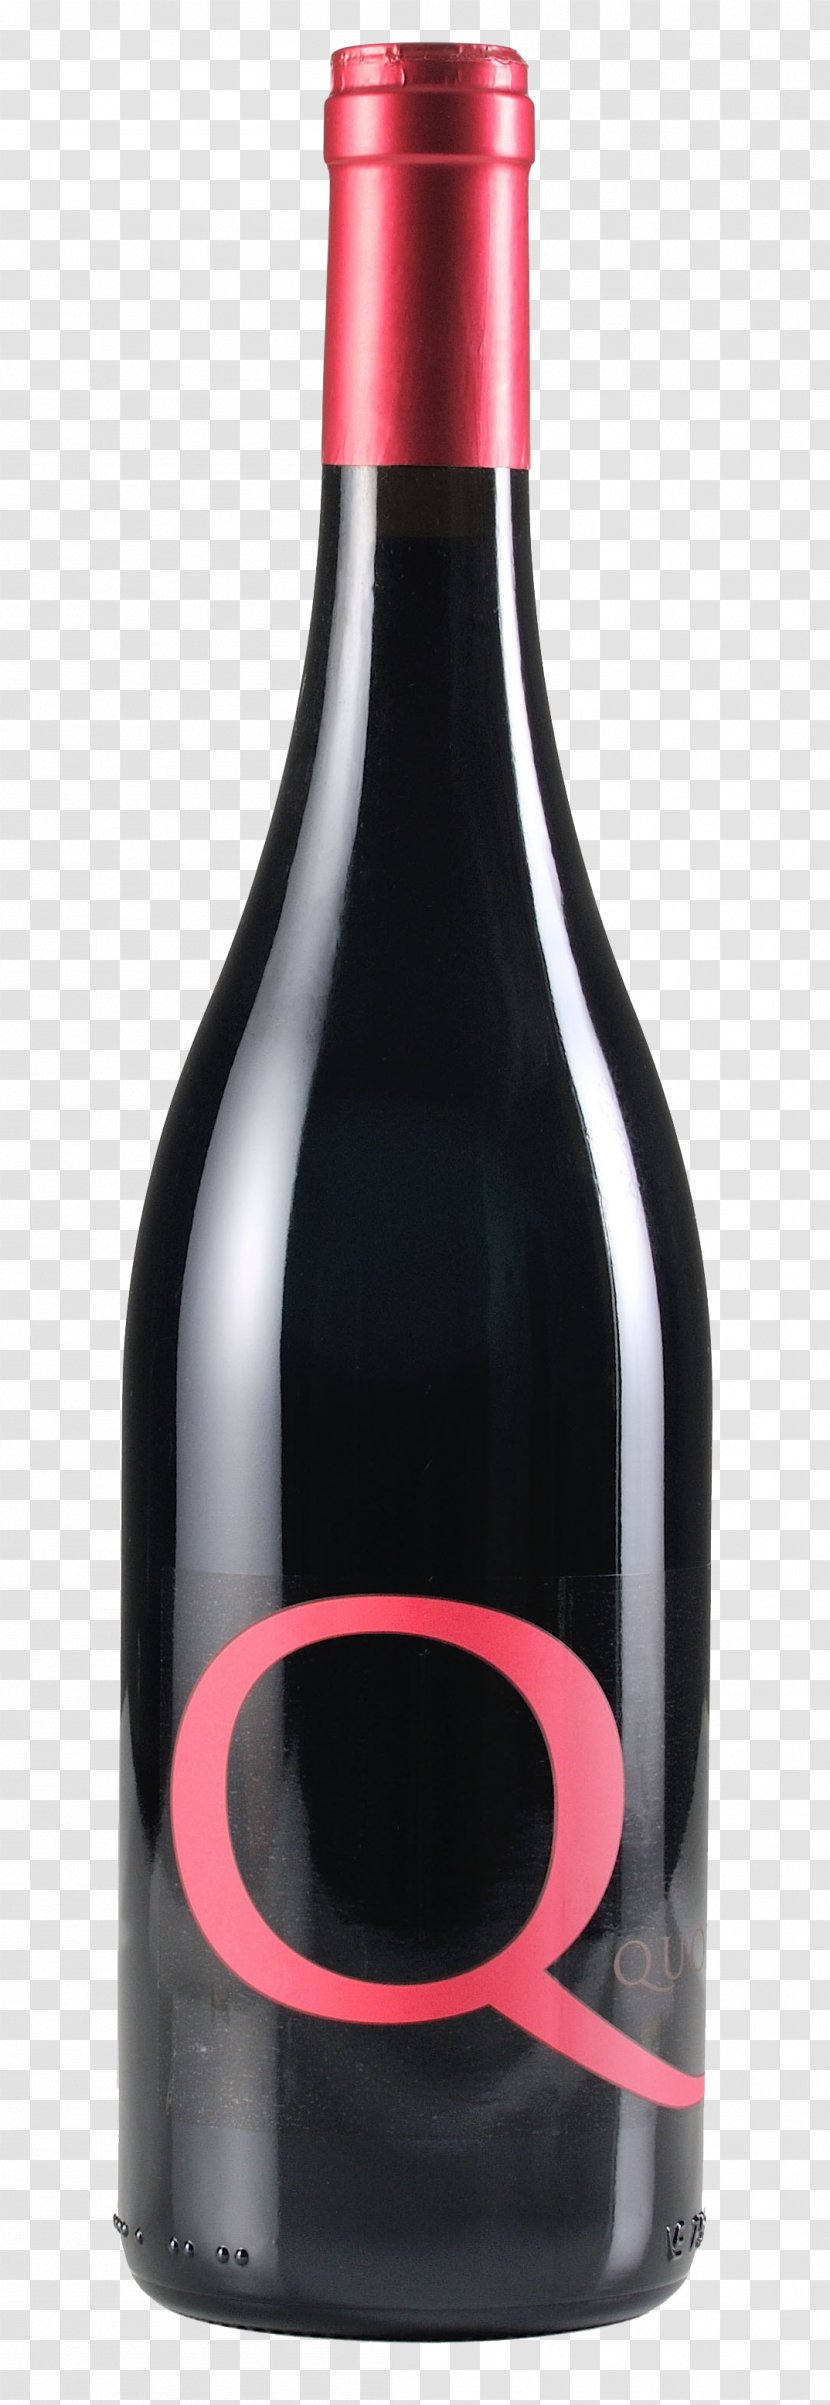 Azienda Agraria Bartolucci Gianluca Red Wine Lacrima Di Morro D'Alba Verdicchio - Bottle Transparent PNG